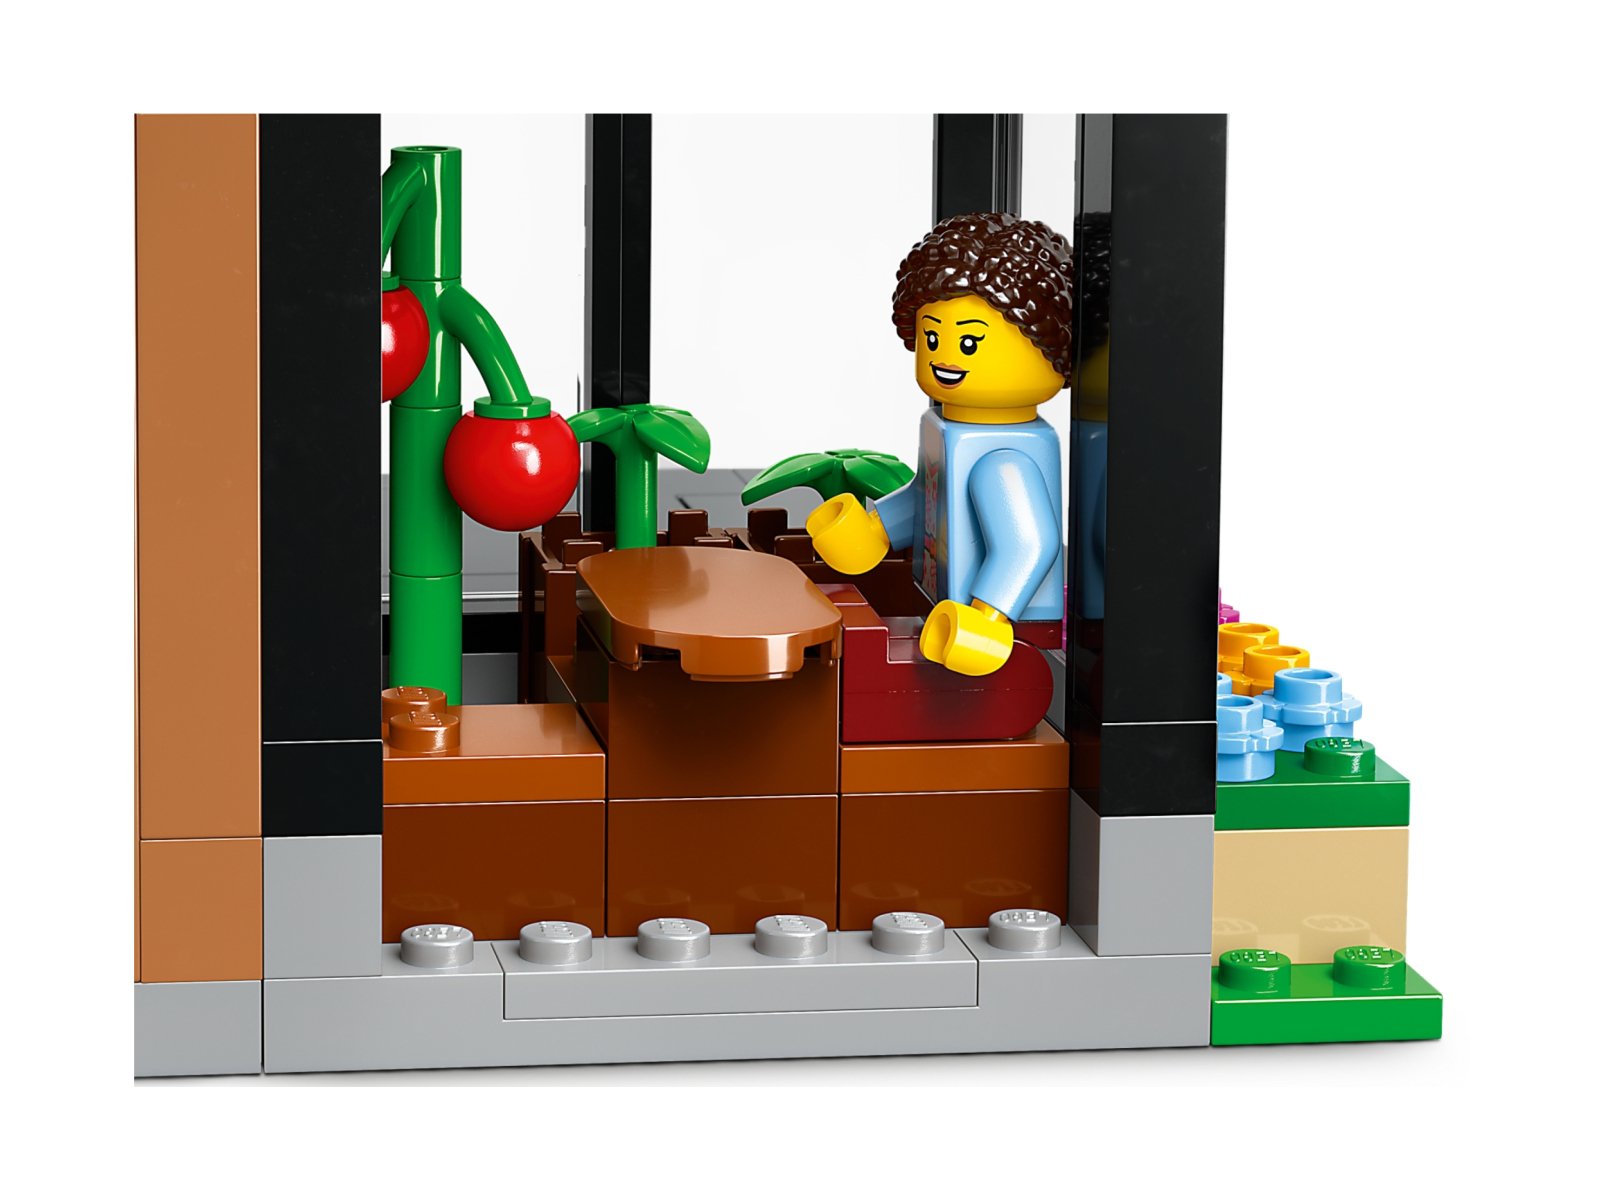 LEGO City 60398 Domek rodzinny i samochód elektryczny